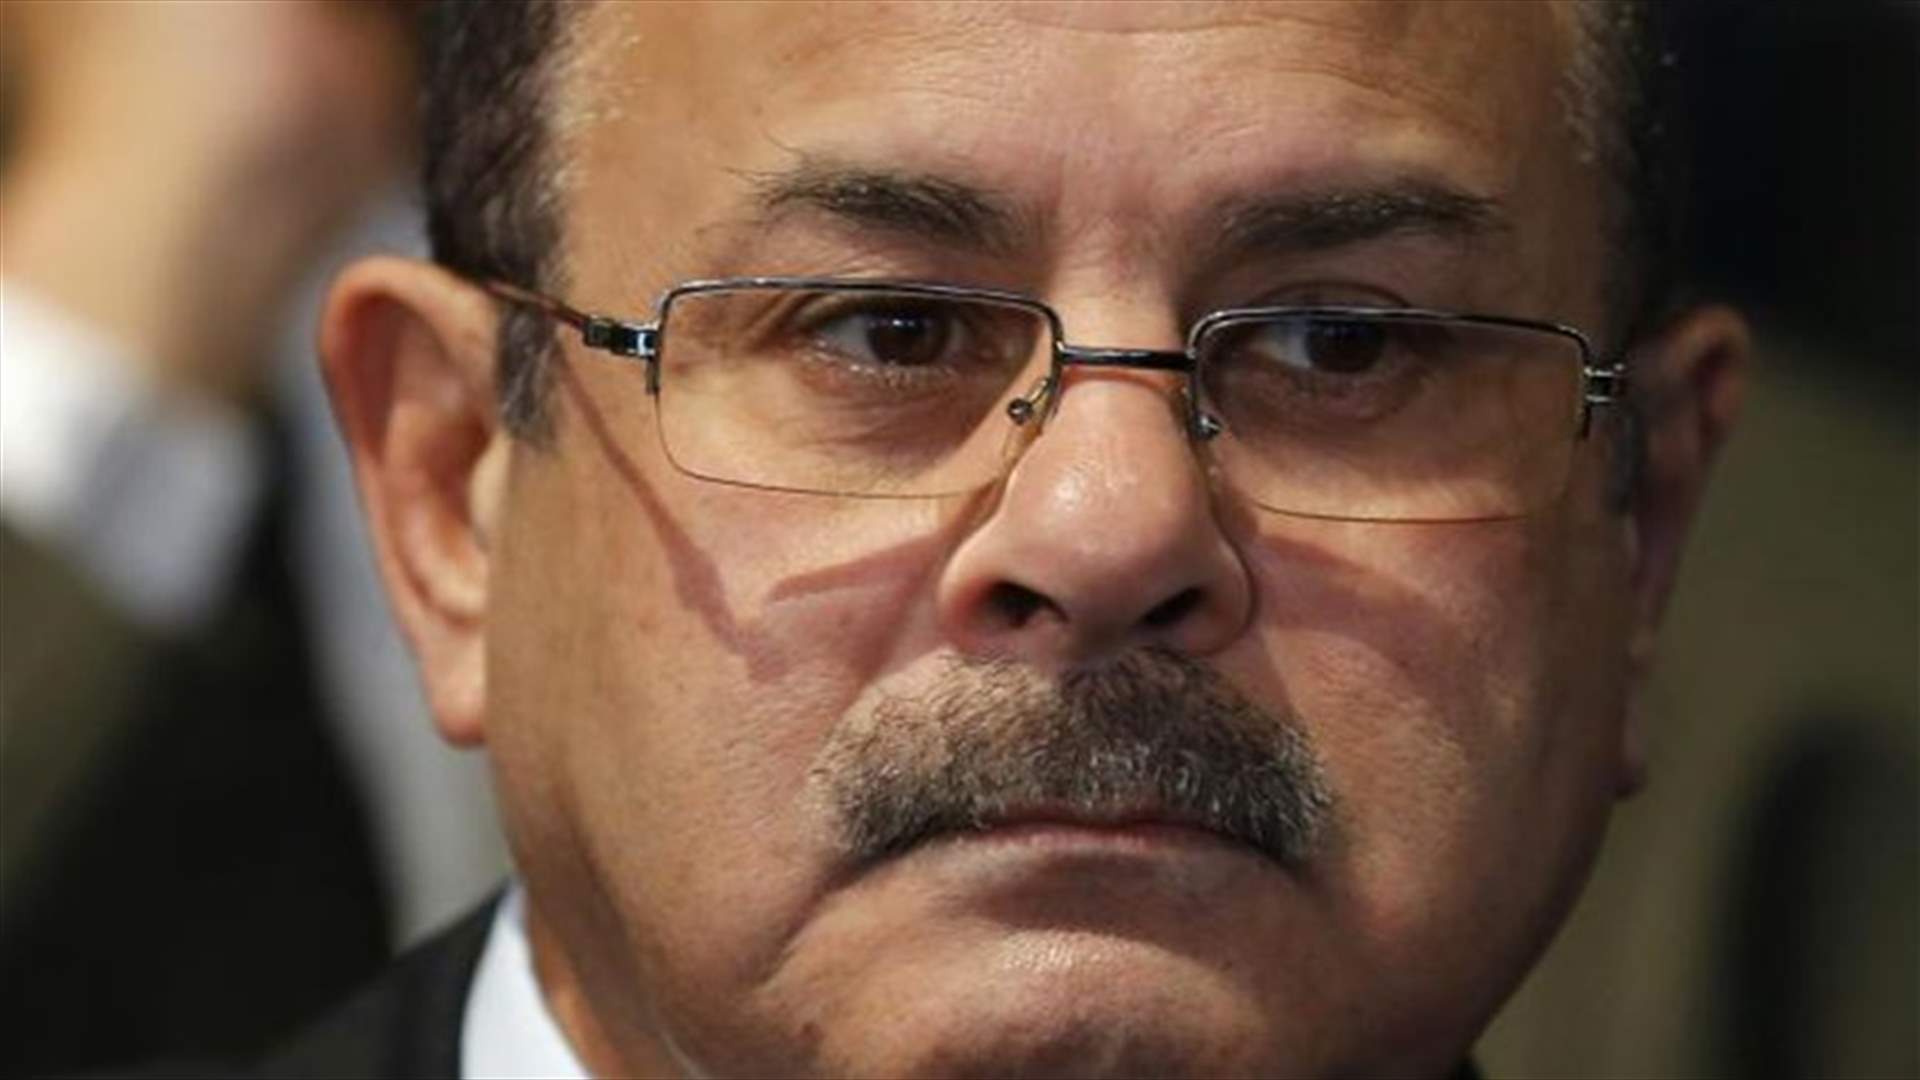 Egypt says it killed senior Muslim Brotherhood leader in shootout   